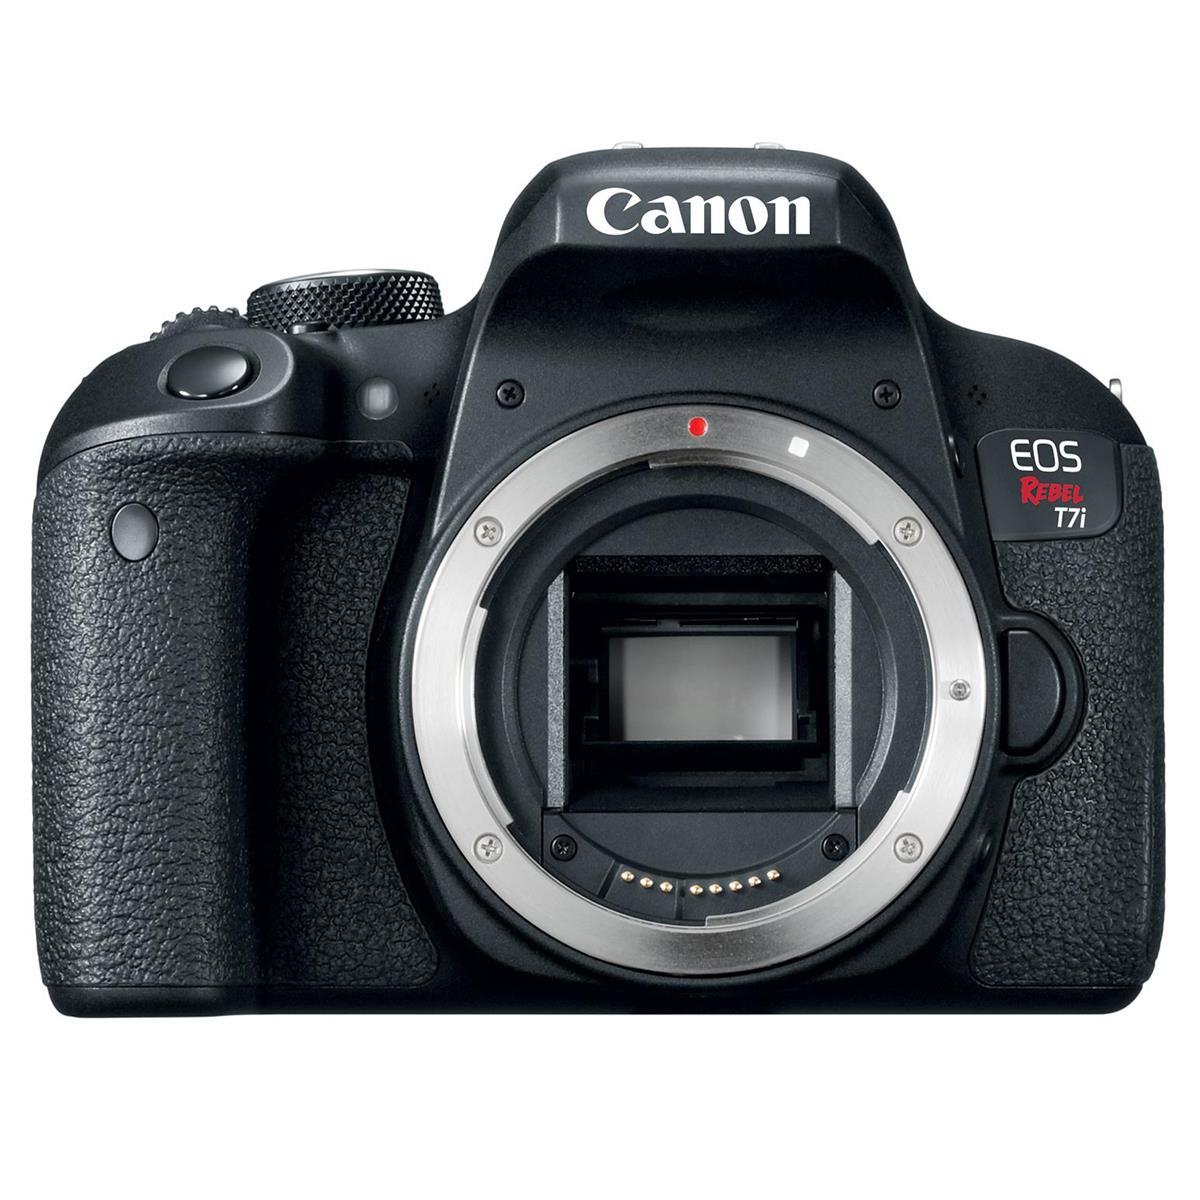 

Canon EOS Rebel T7i DSLR Camera Body